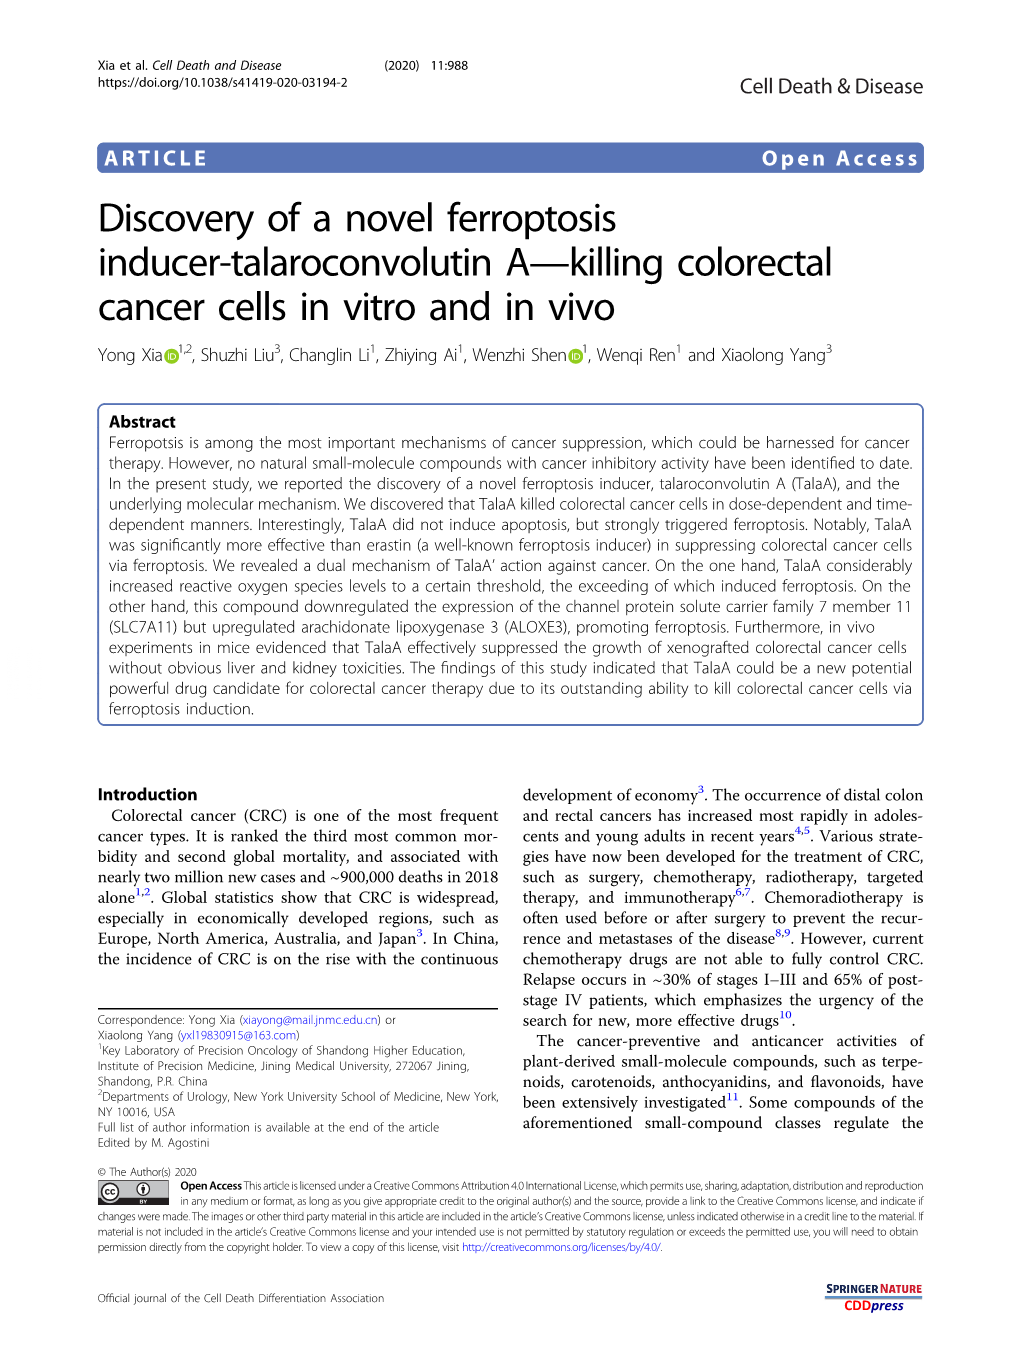 Discovery of a Novel Ferroptosis Inducer-Talaroconvolutin A—Killing